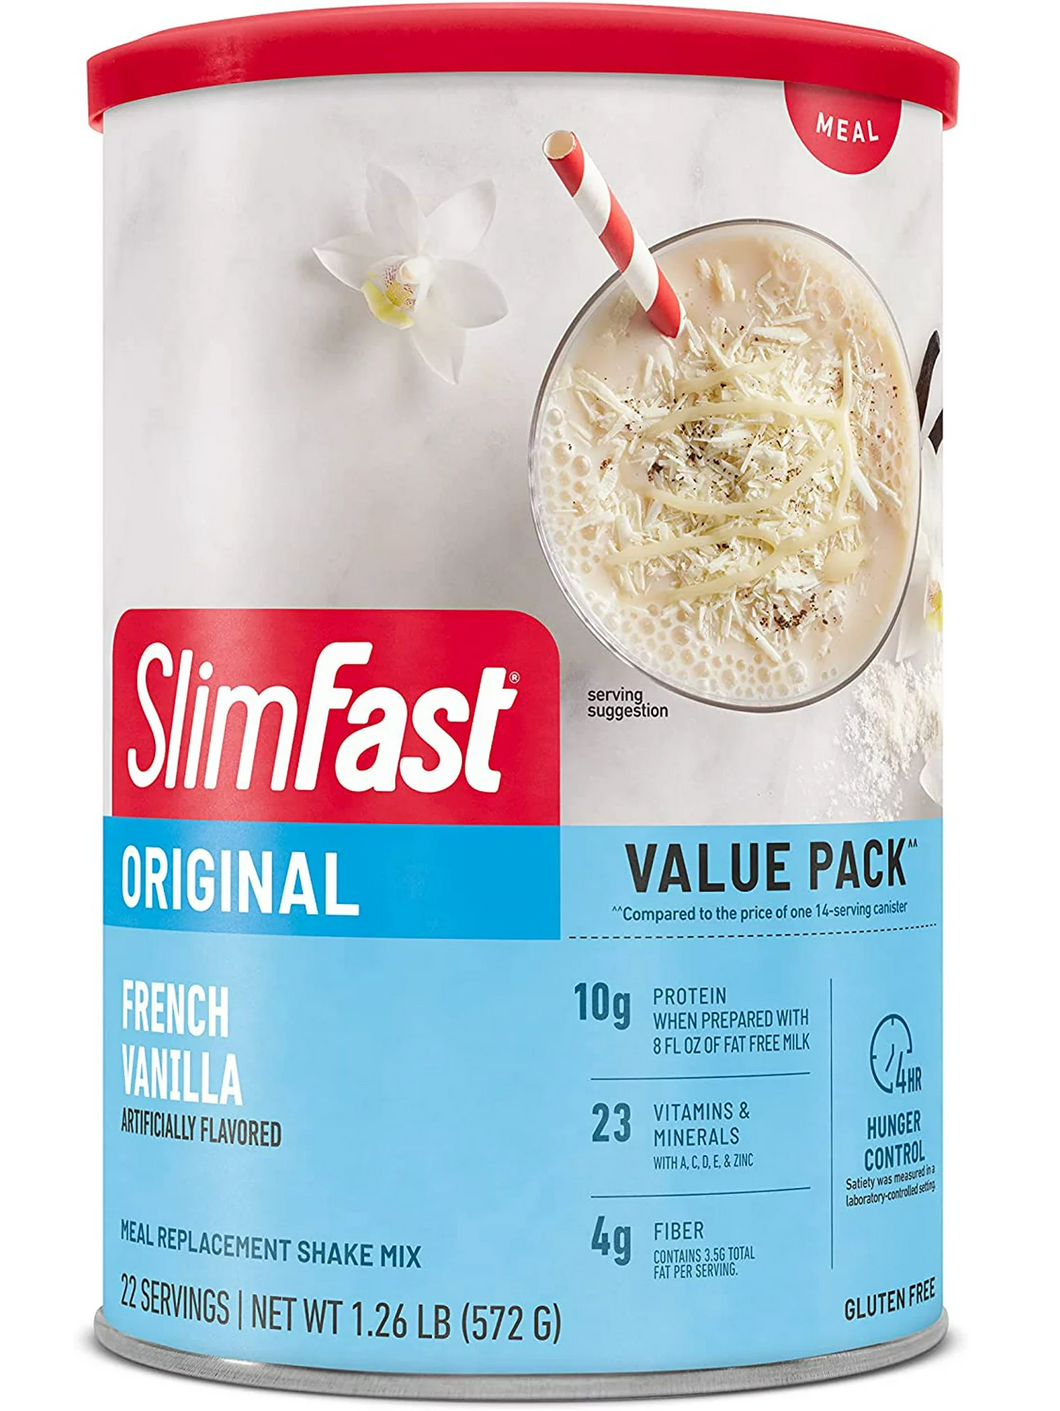 SlimFast sabor vainilla. Quita el hambre sin afectar tu salud, 23 vitaminas y minerales, 4g de fibra, 10g de proteína. Varios tamaños disponibles.